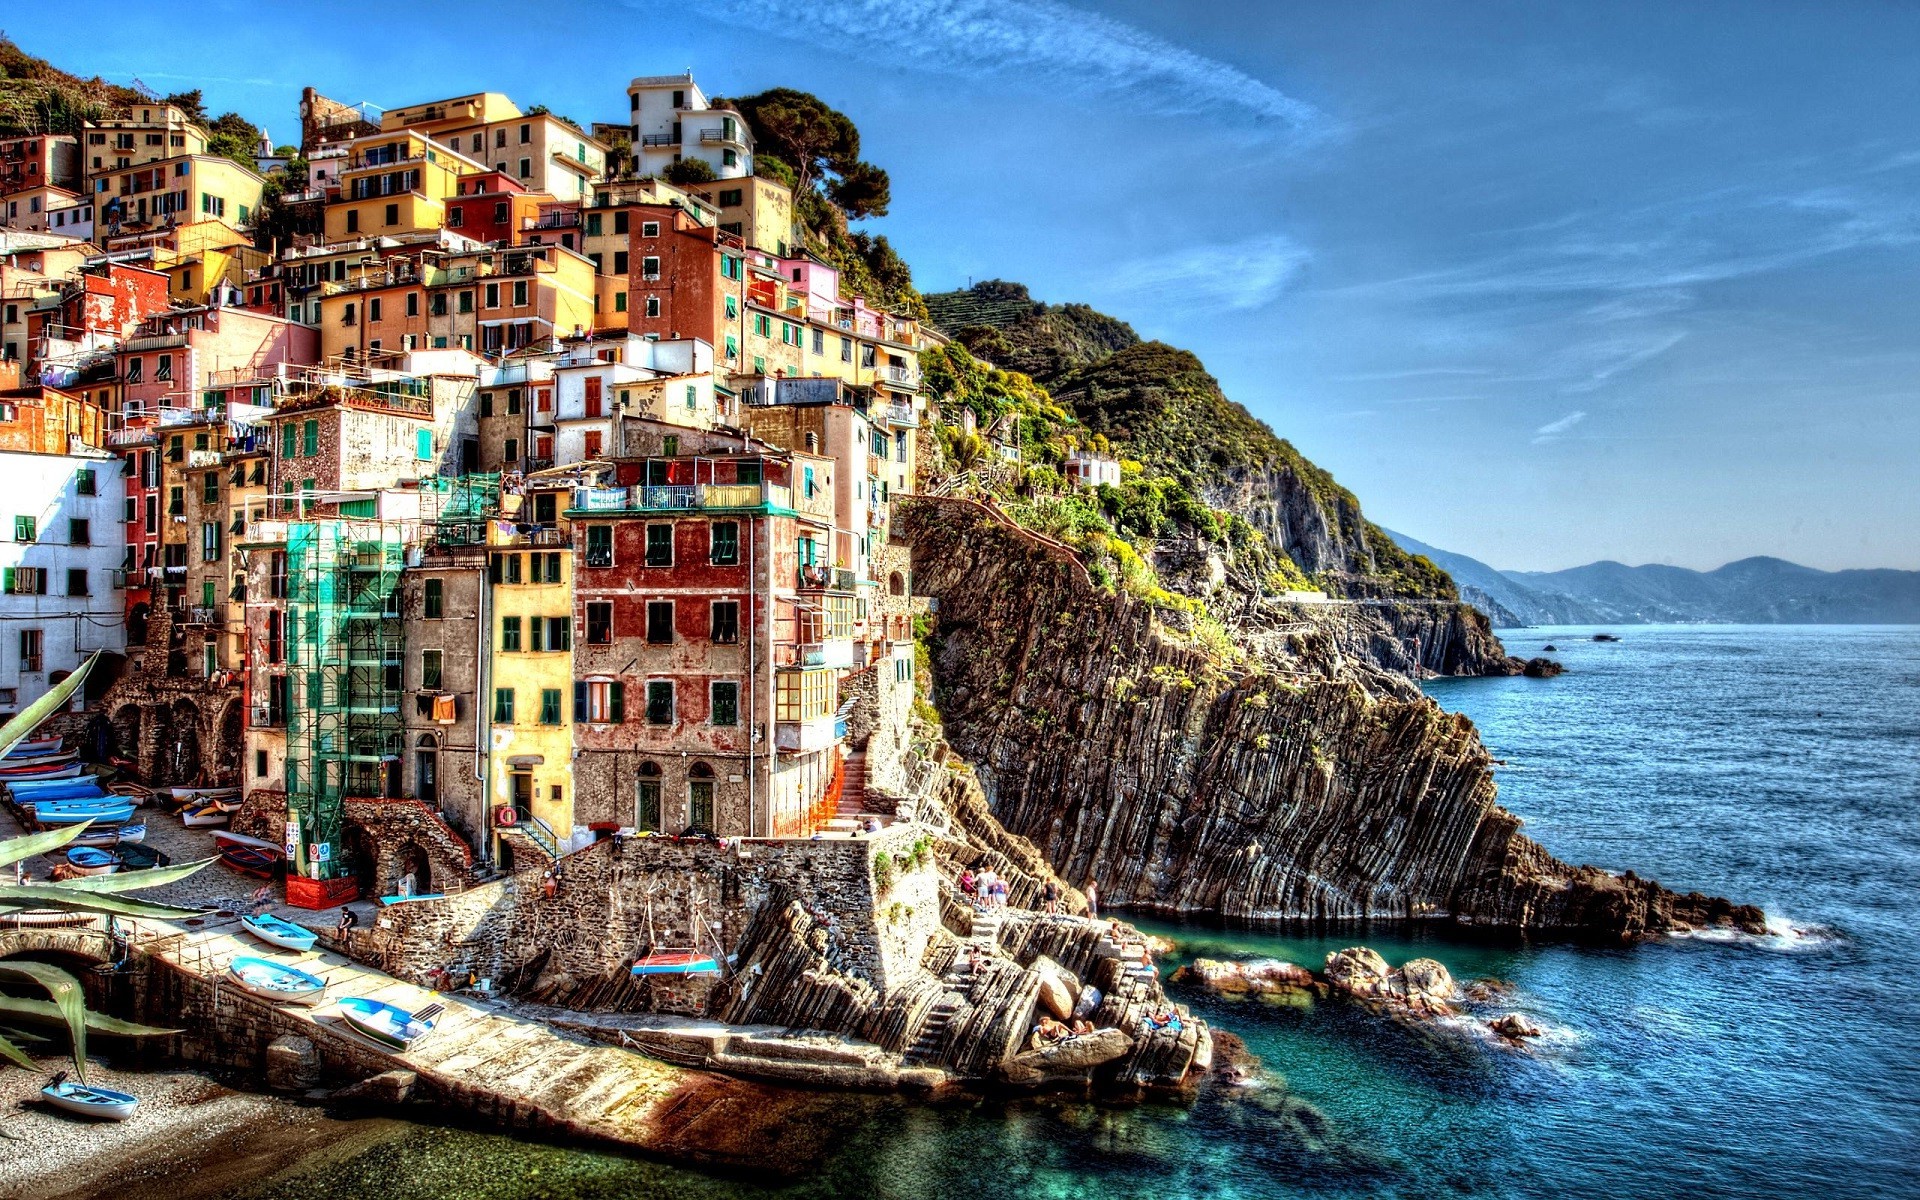 Cinque Terre, Italy, Sea, City, Dock, Boat, Building, Colorful, Hill, Cityscape, Cliff Wallpaper